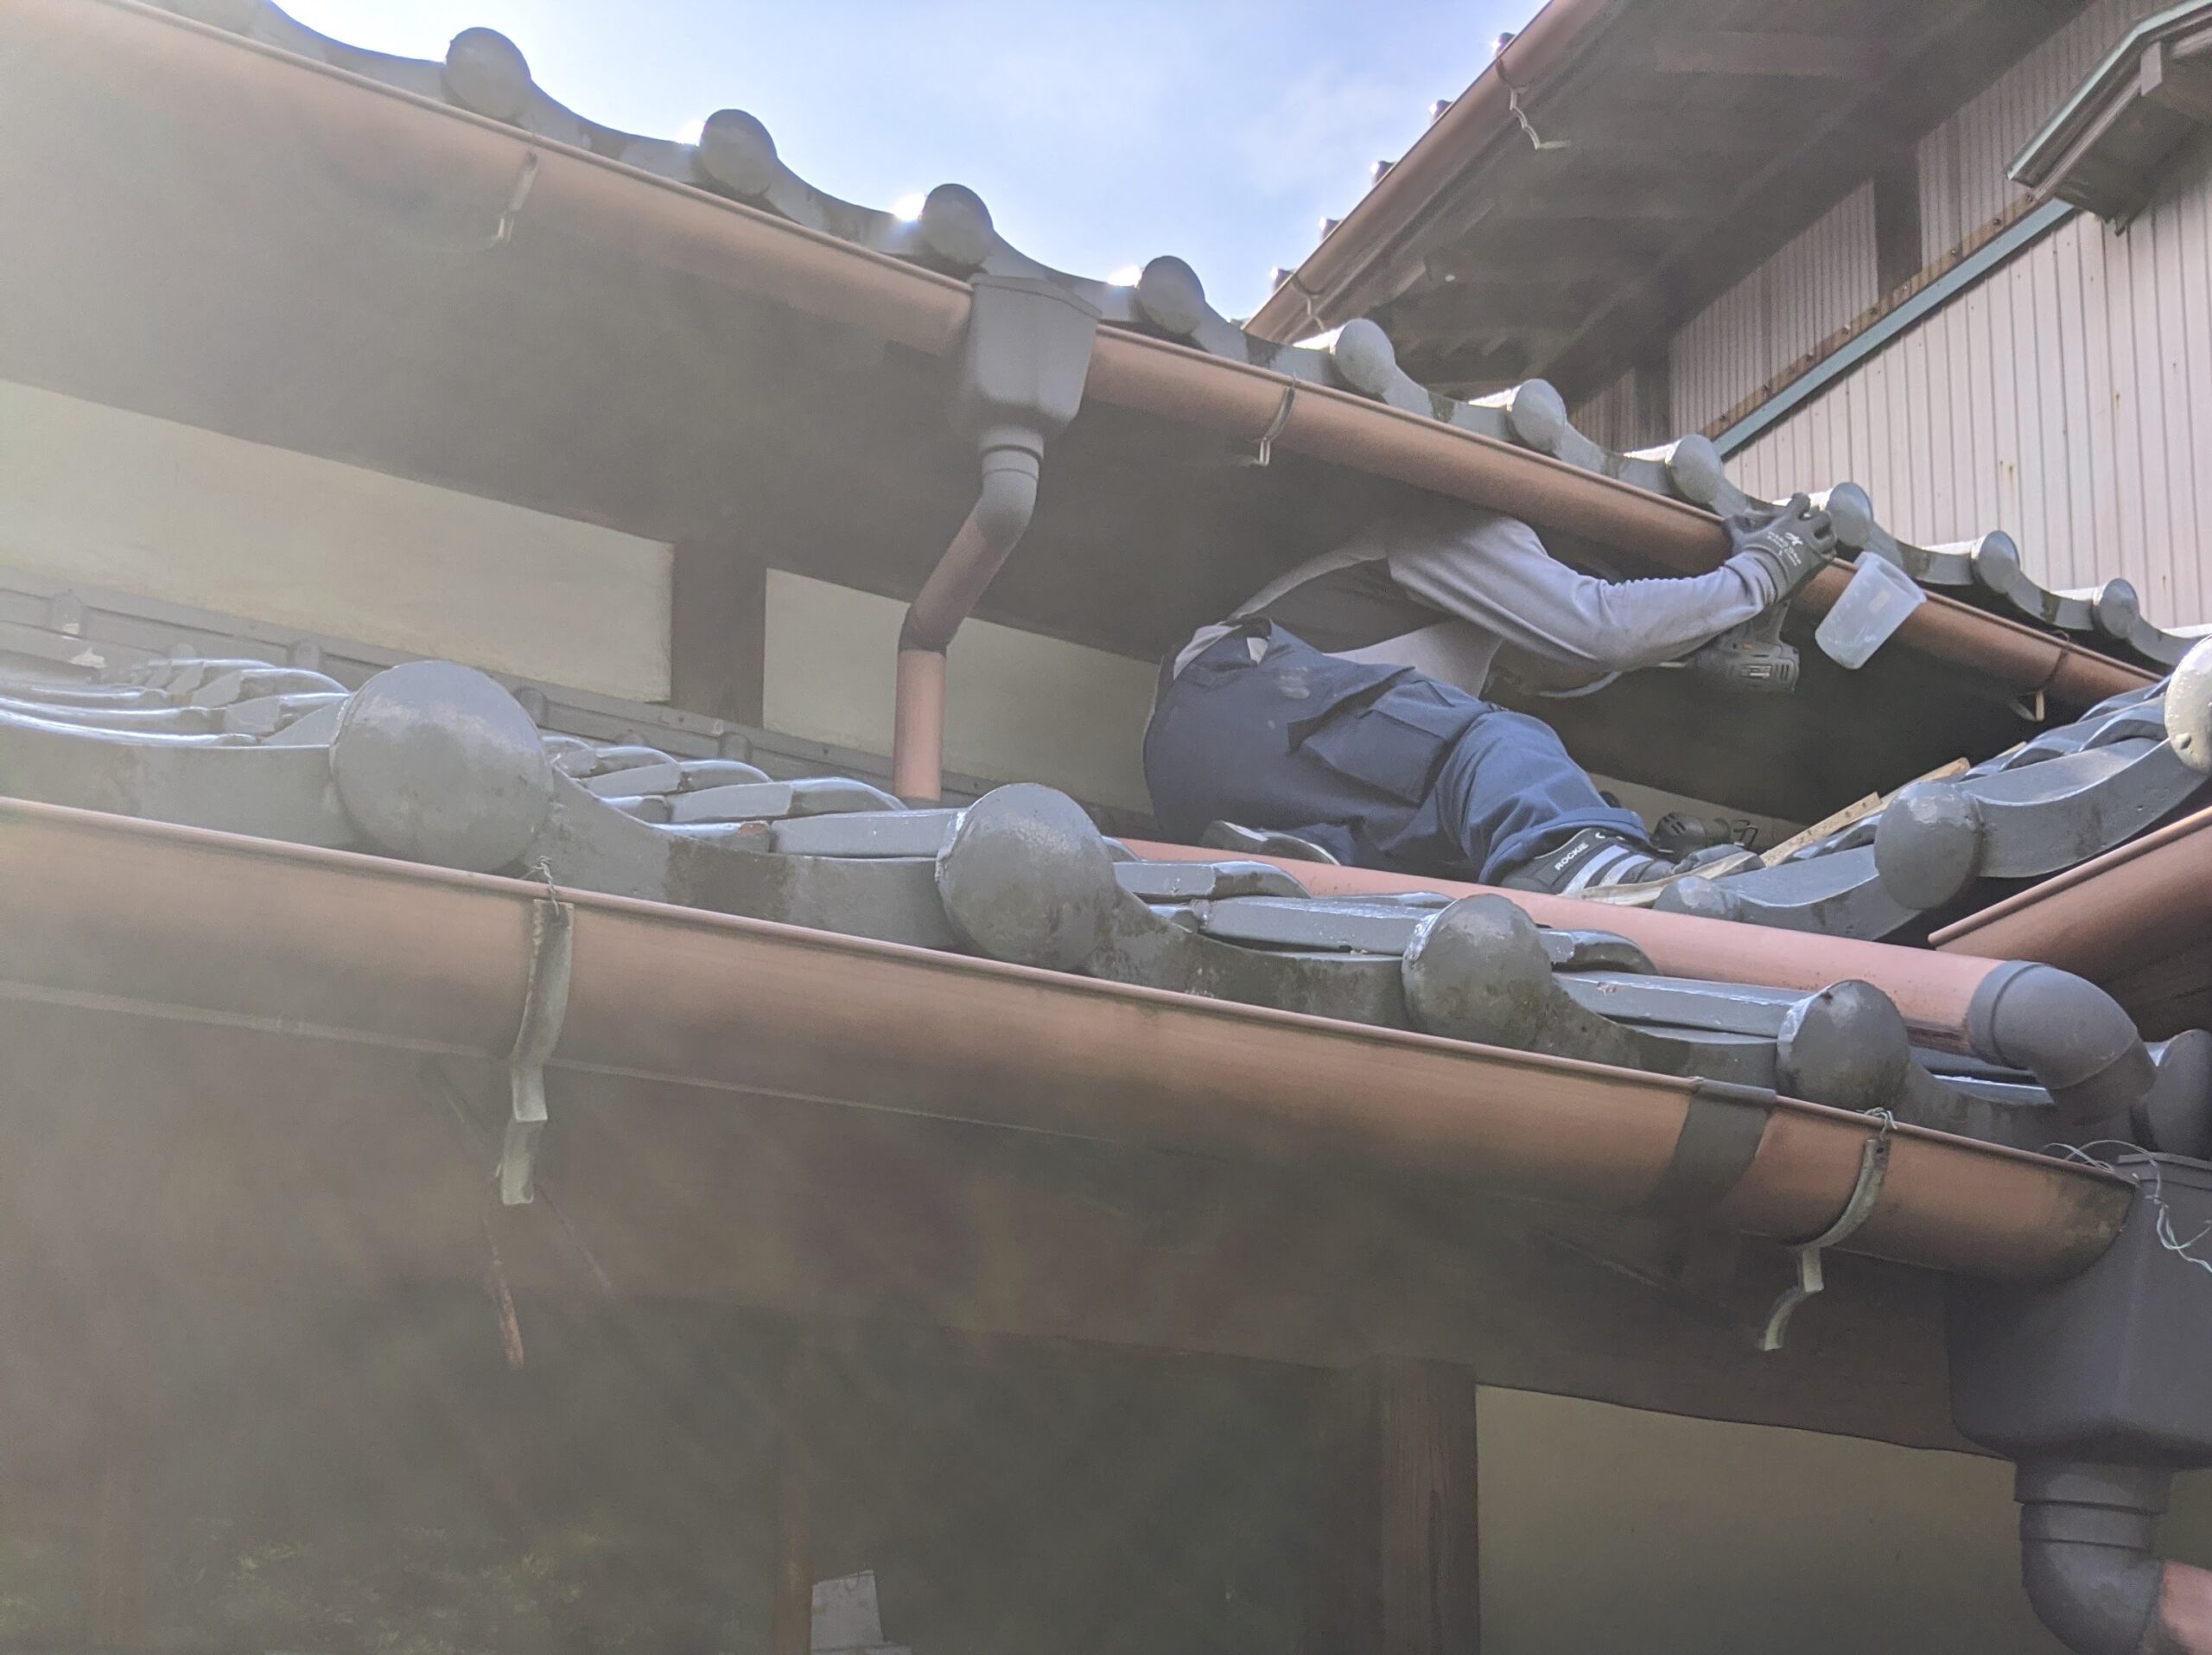 ハクビシン駆除作業員が瓦屋根の隙間を塞いで侵入口を塞ぐ